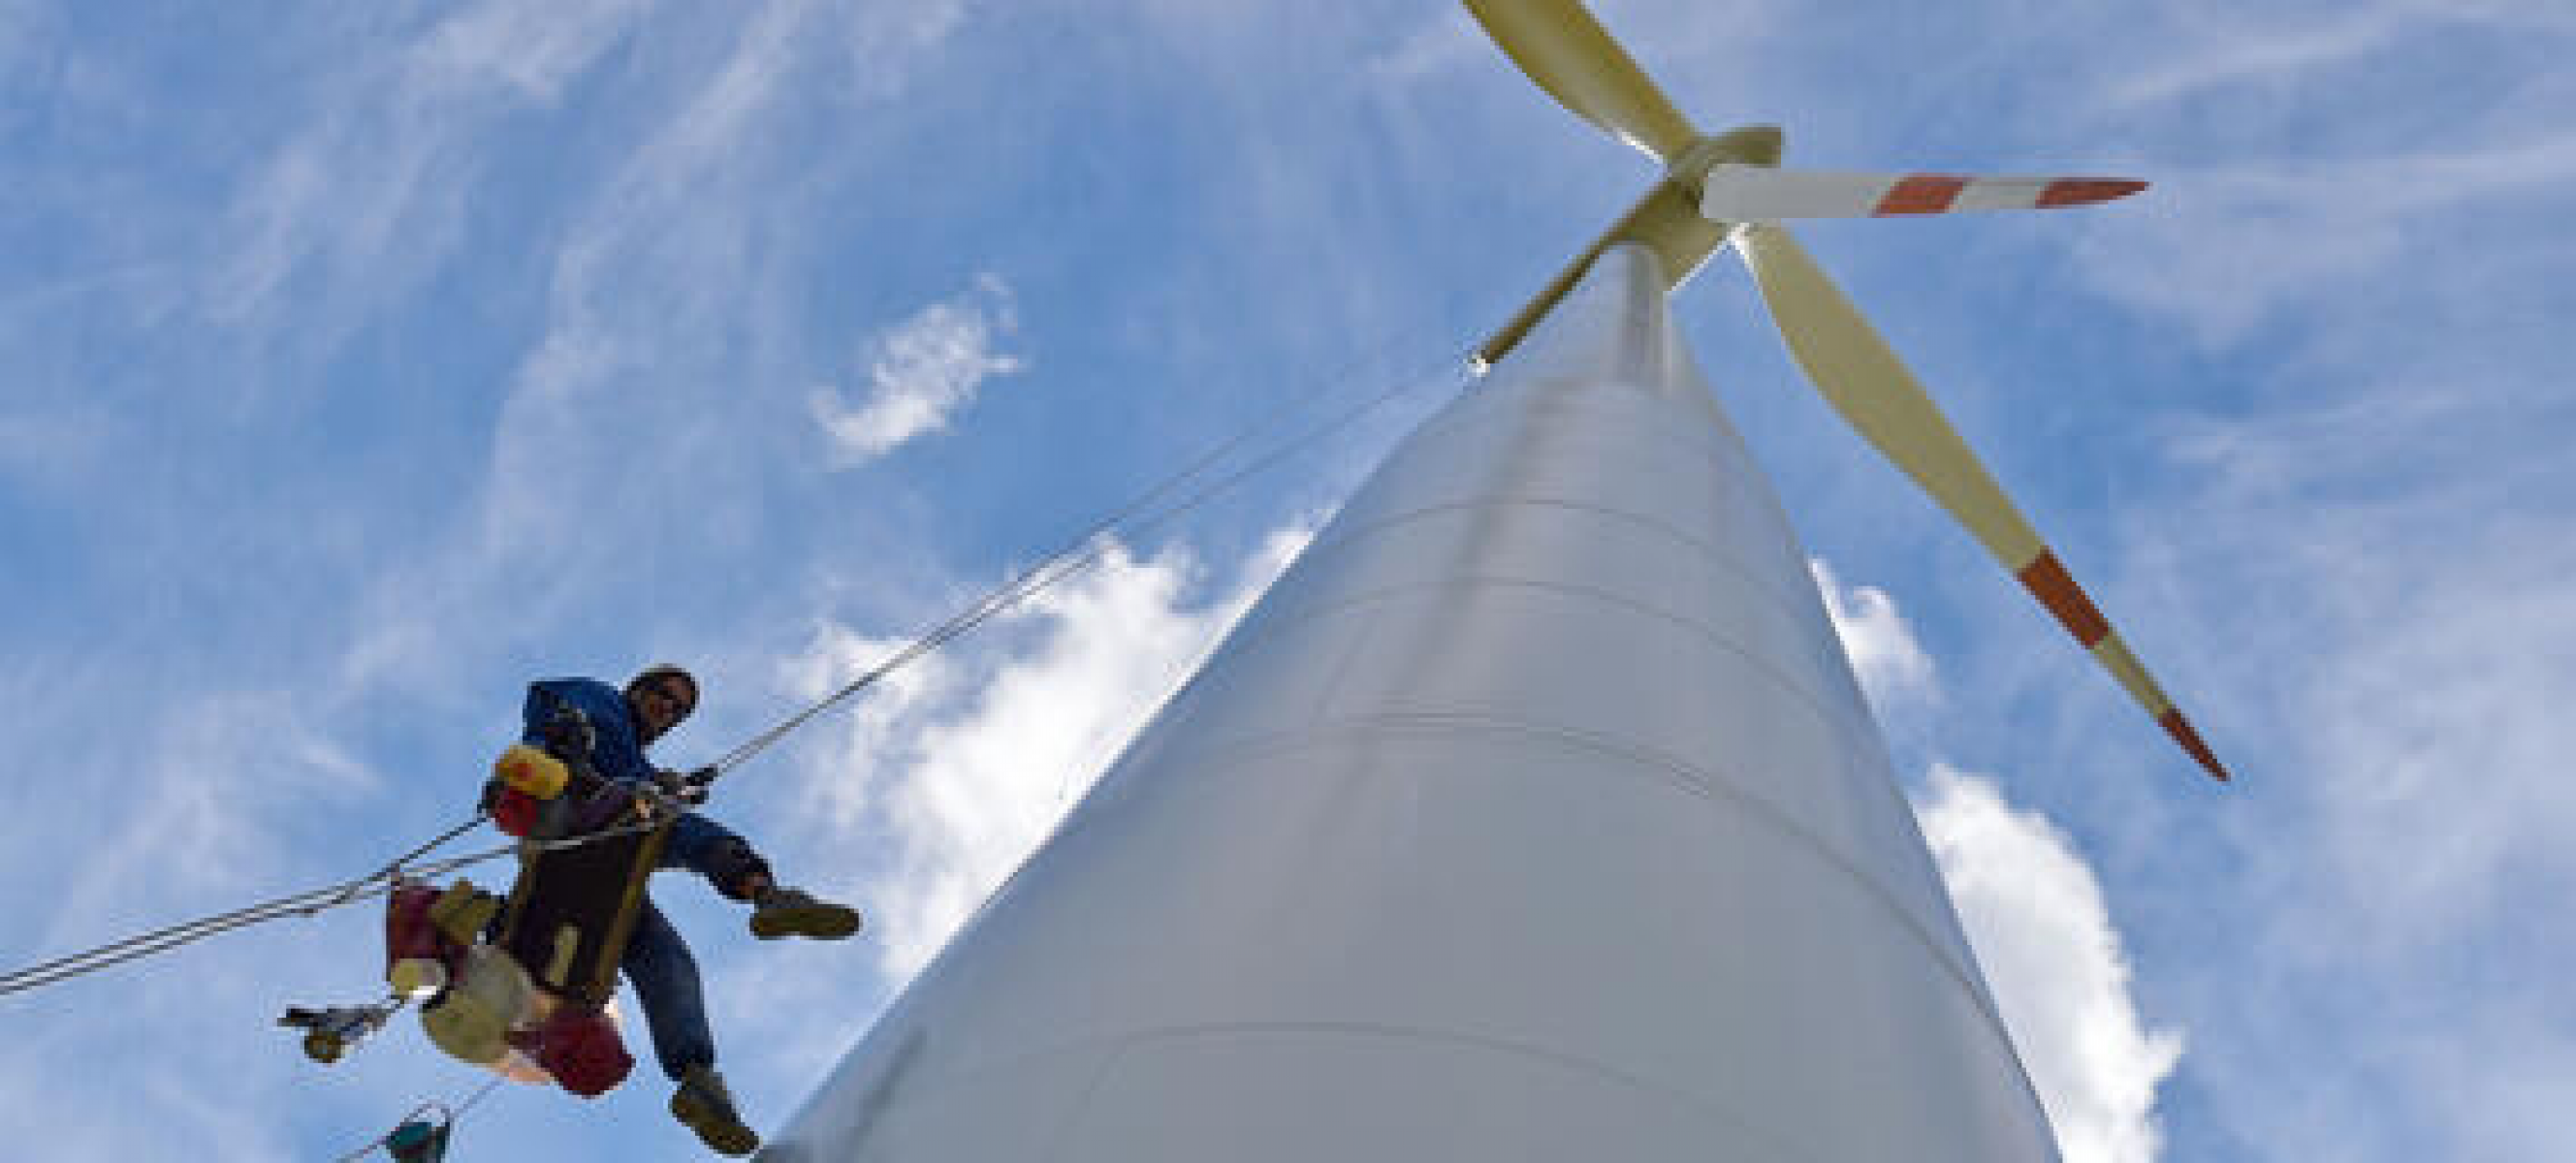 Windindustrie braucht schnellere Verfahren und bessere Arbeitsbedingungen, um notwendigen Ausbau stemmen zu können